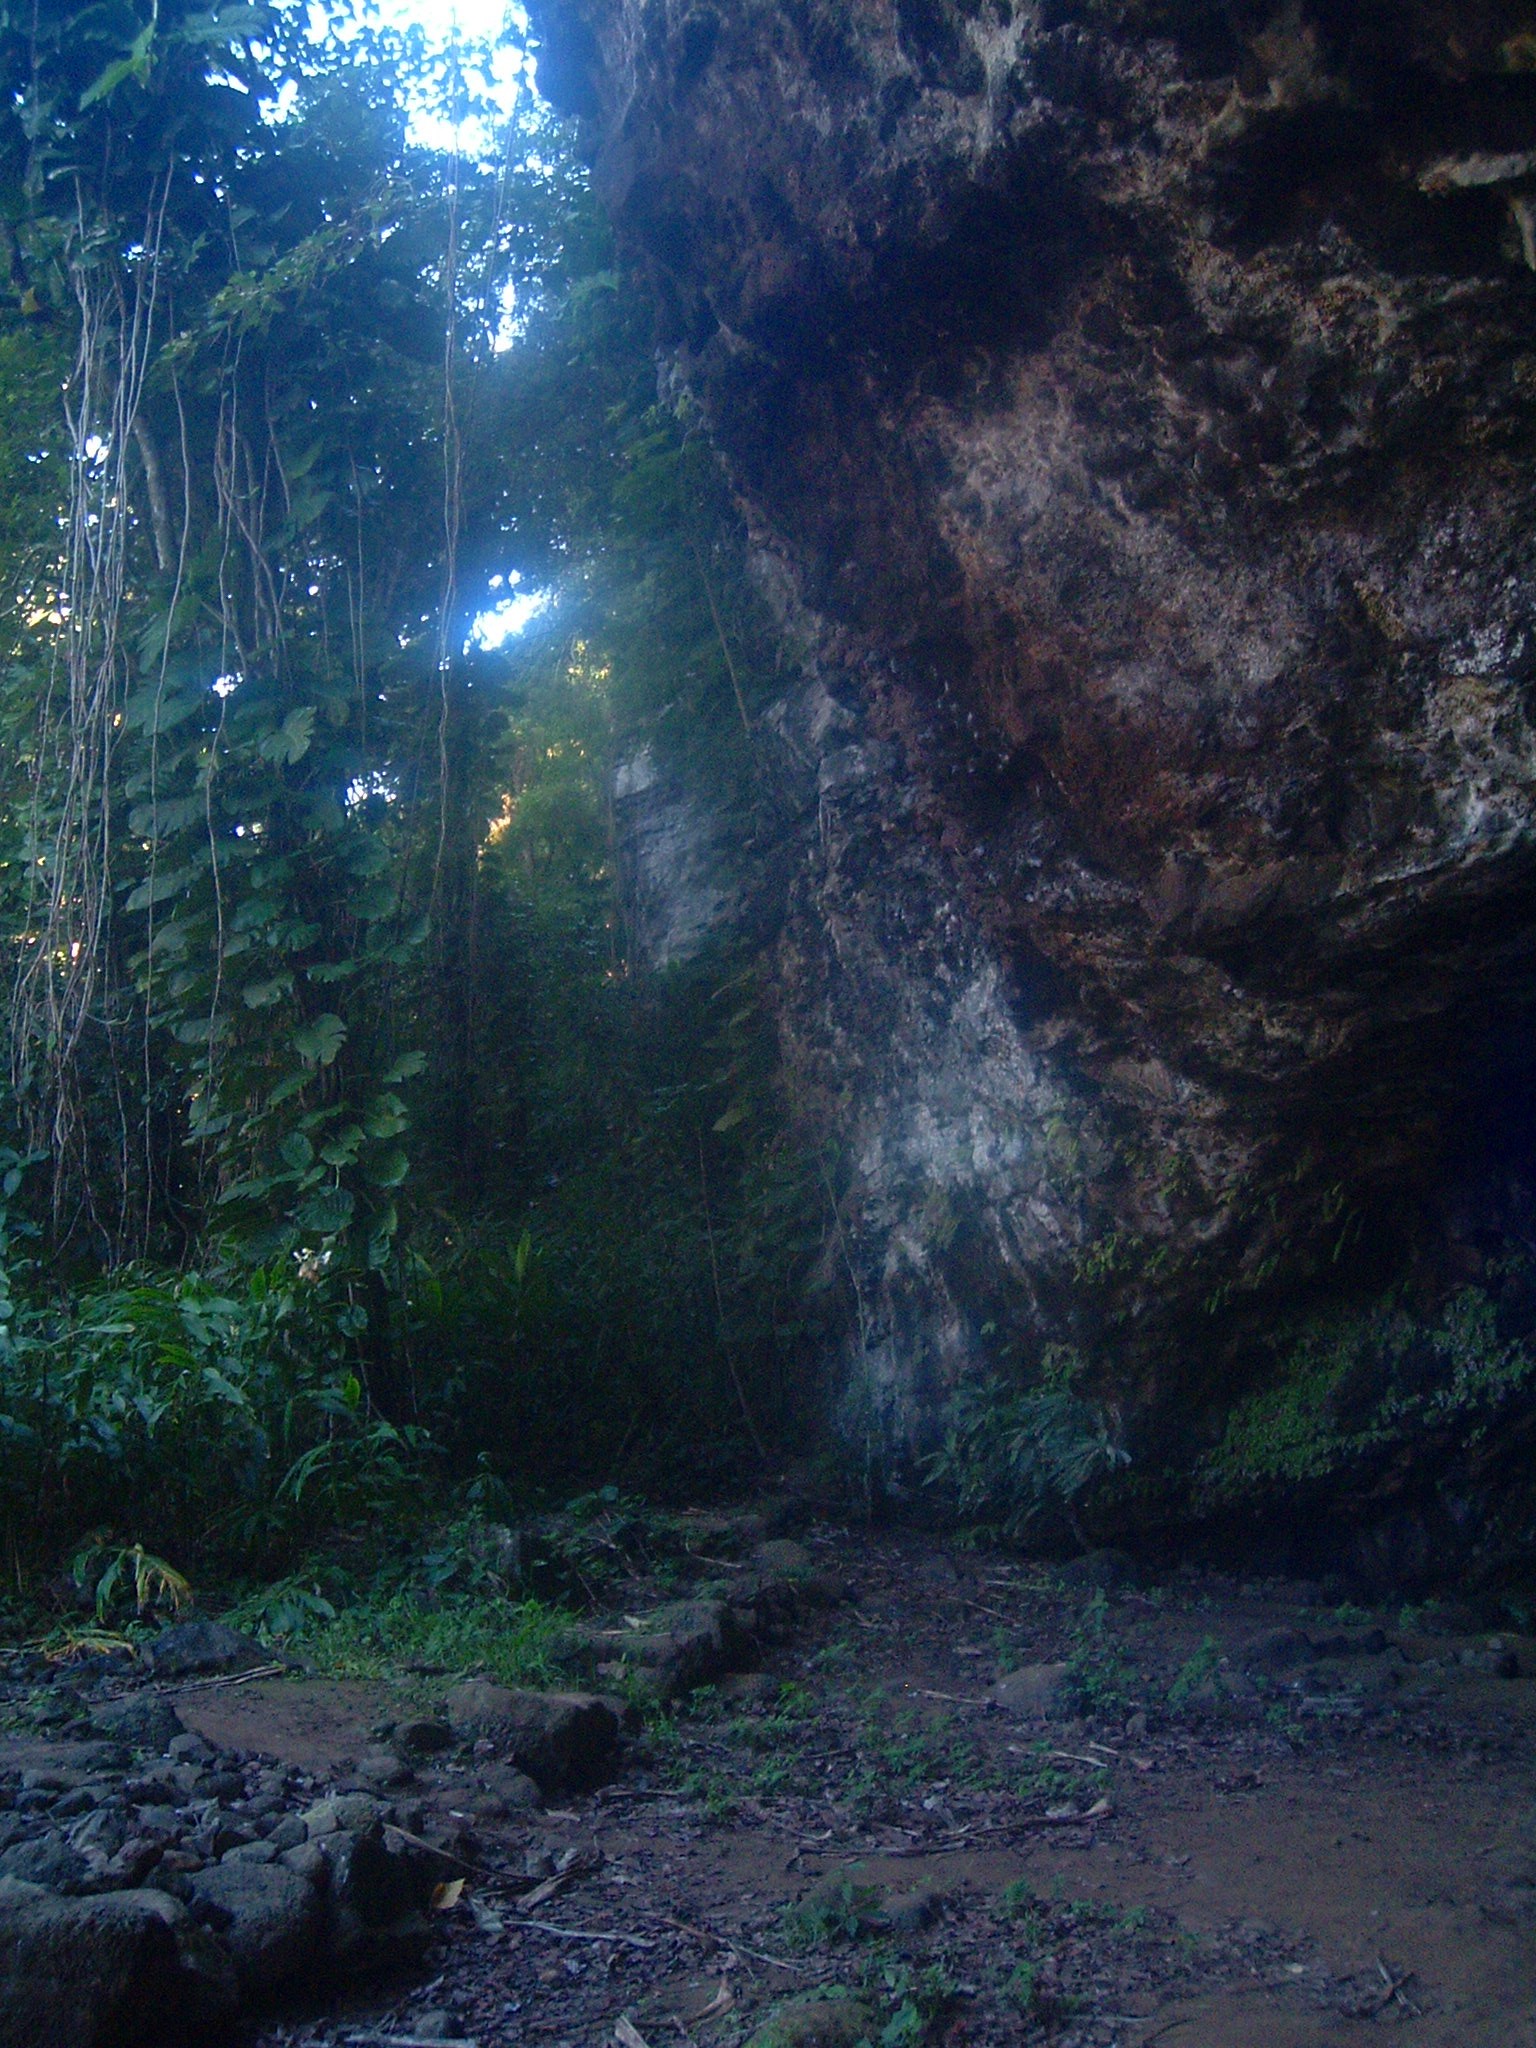 kauai cave entrance.JPG